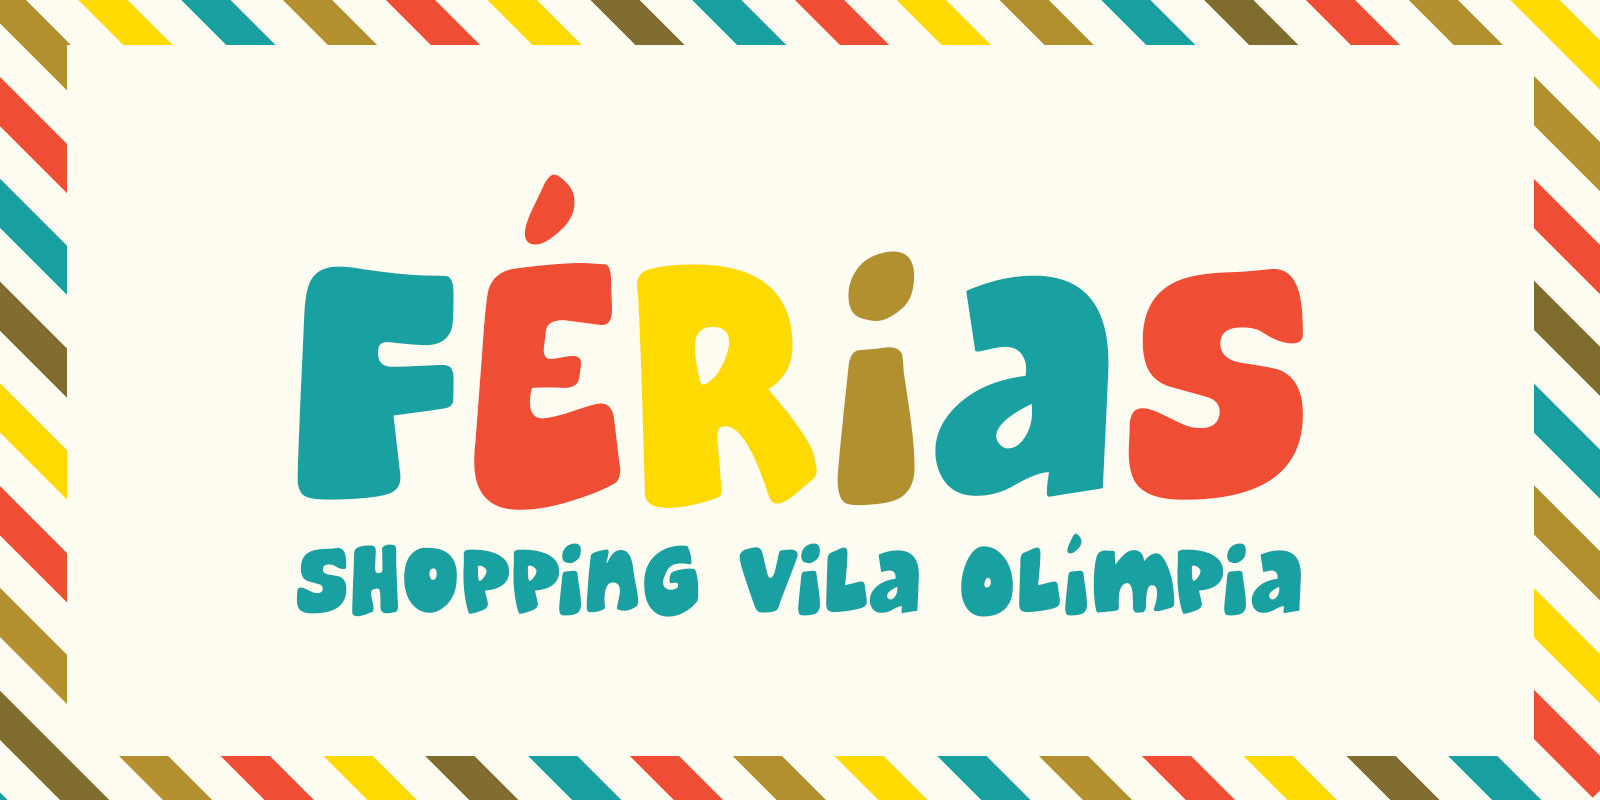 Featured image for “Férias no Vila Olímpia”